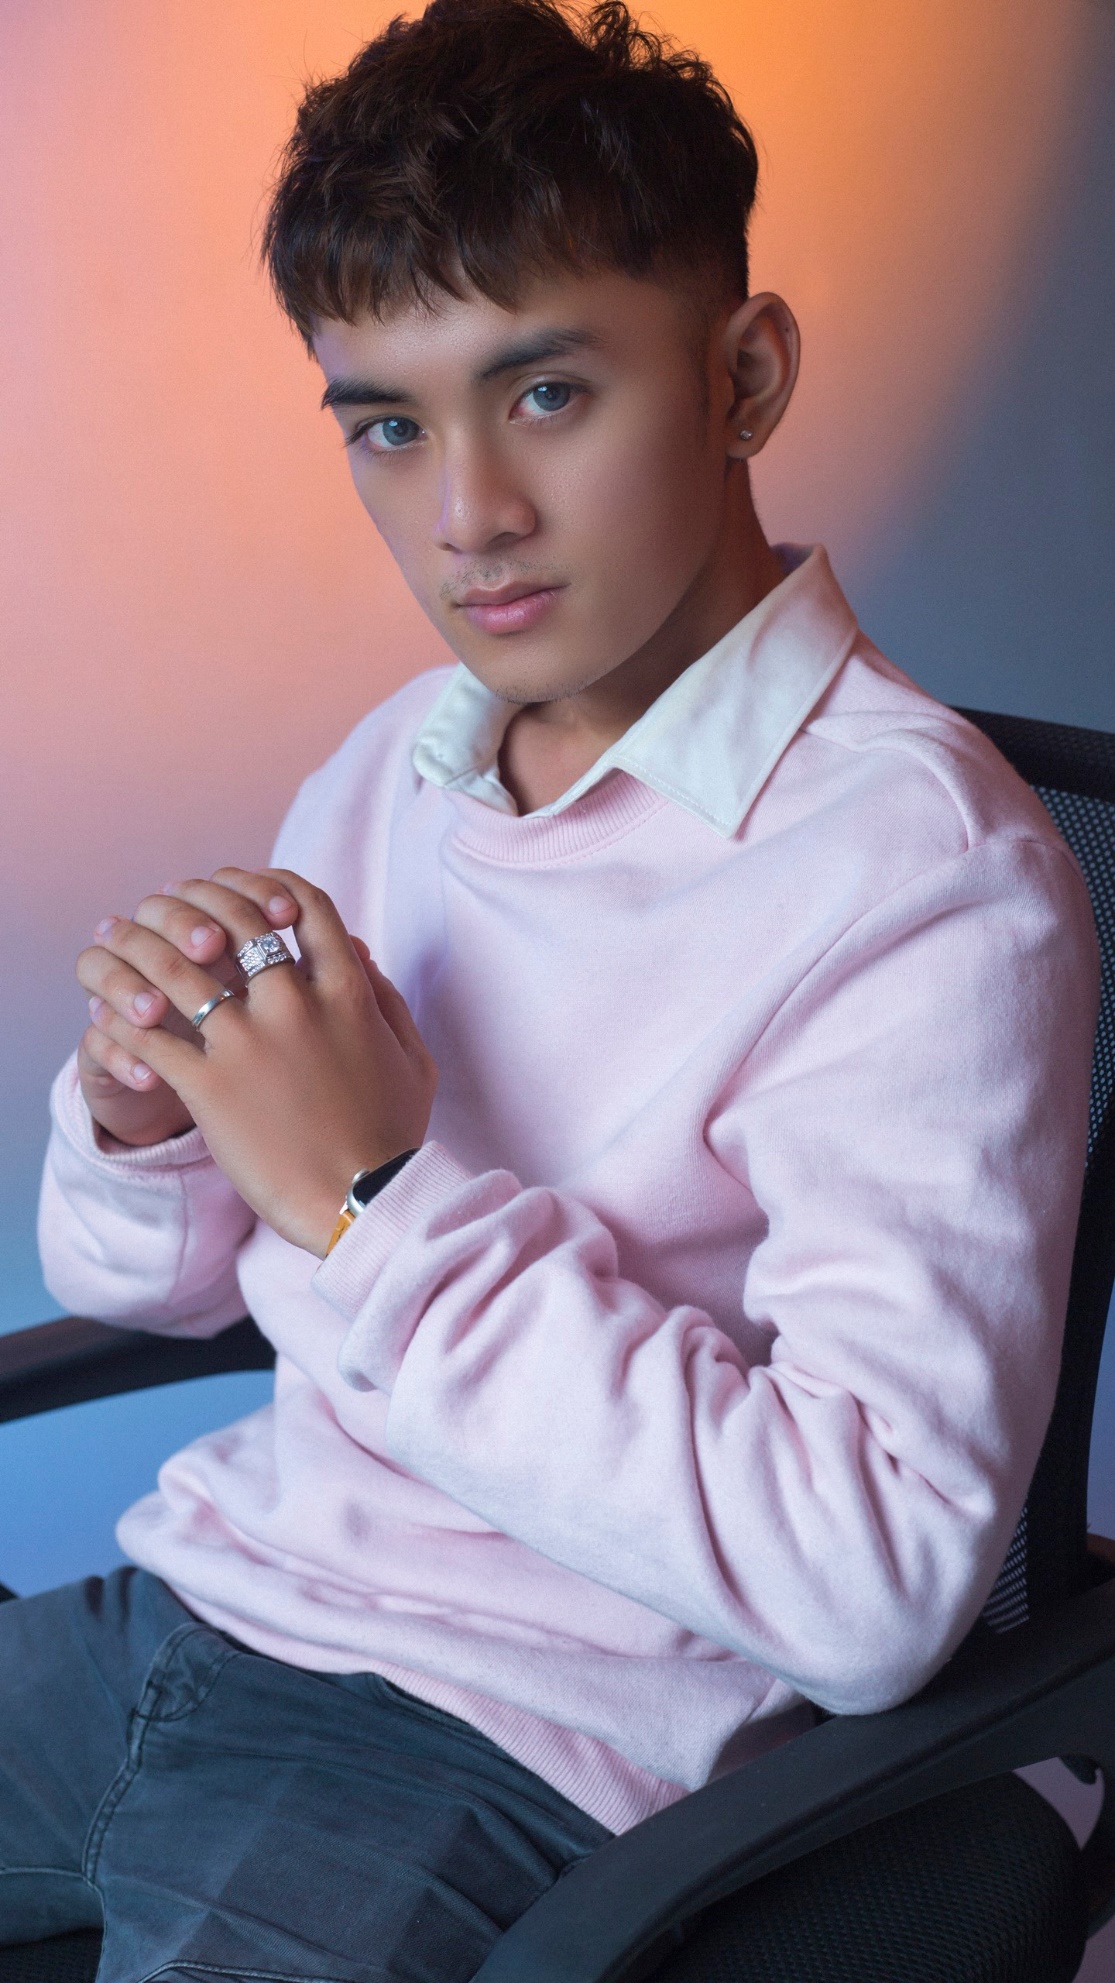 Chân dung Hotboy Lâm Duy khởi nghiệp kinh doanh thành công từ năm 16 tuổi - Ảnh 1.